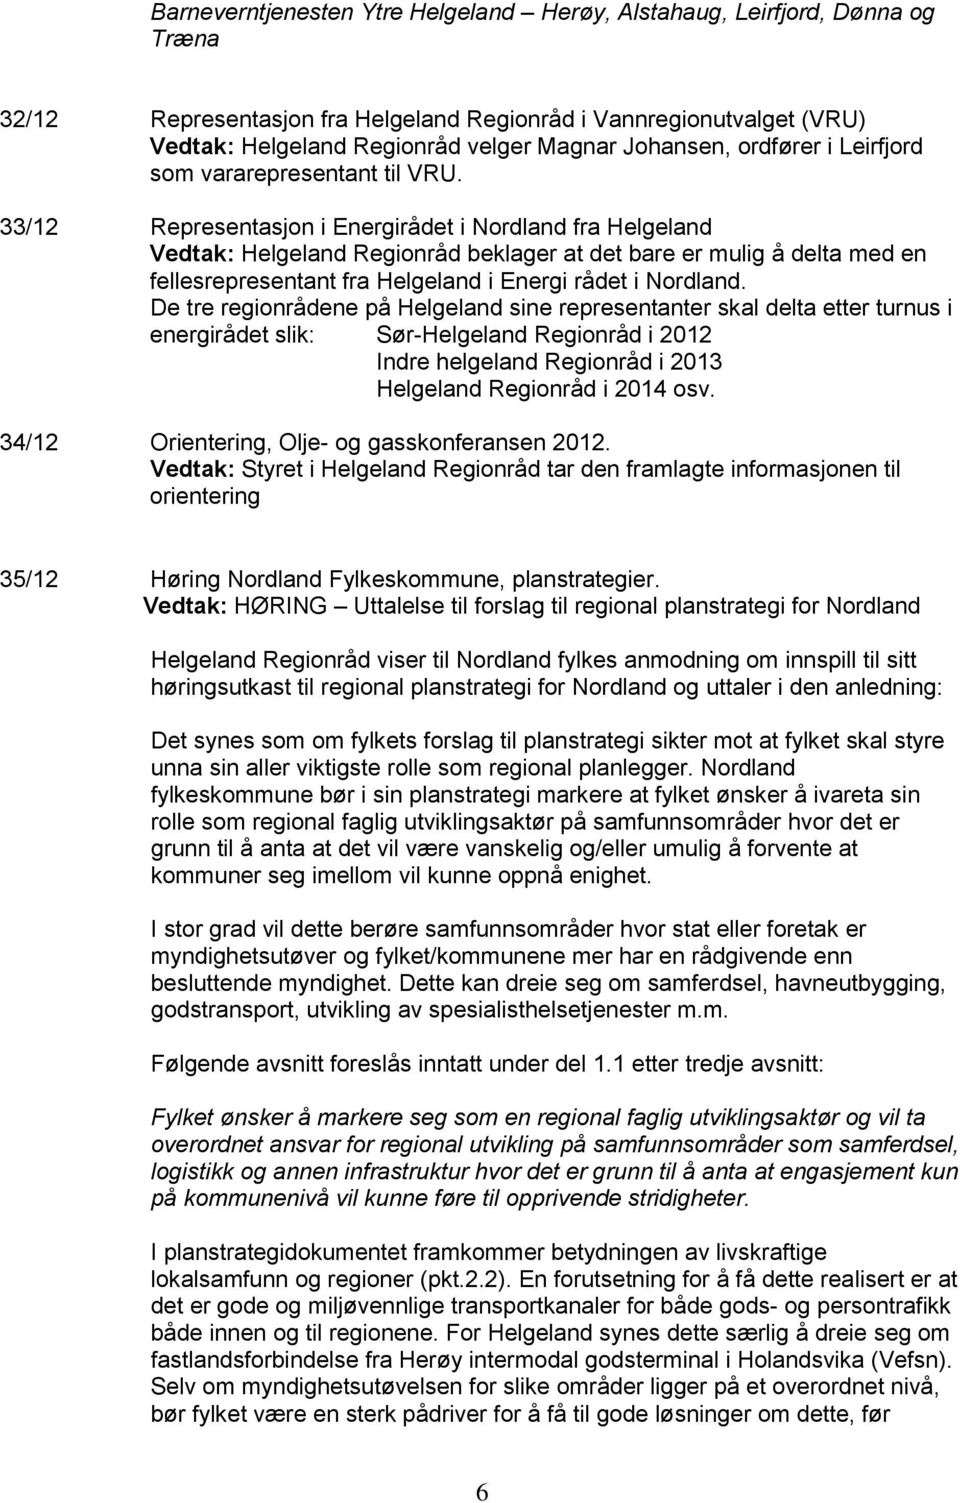 33/12 Representasjon i Energirådet i Nordland fra Helgeland Vedtak: Helgeland Regionråd beklager at det bare er mulig å delta med en fellesrepresentant fra Helgeland i Energi rådet i Nordland.